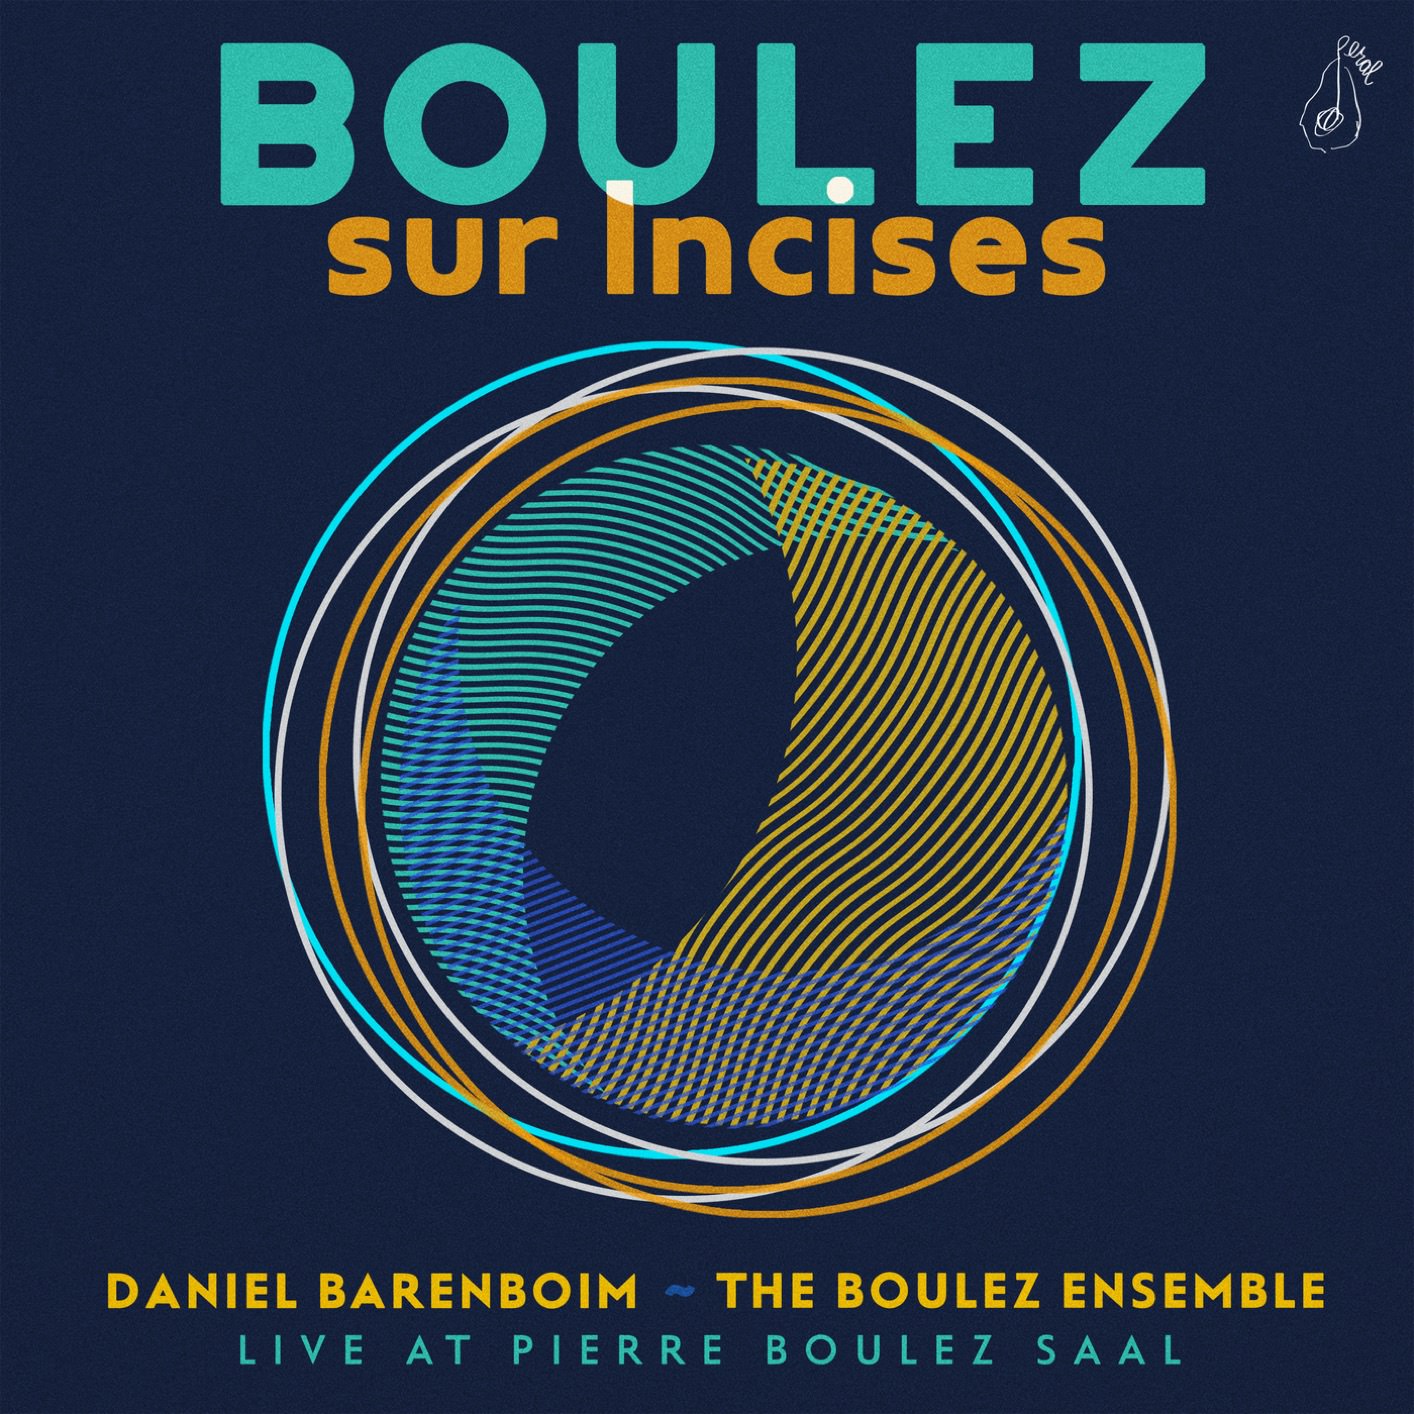 The Boulez Ensemble & Daniel Barenboime - Boulez: Sur Incises (Live At Pierre Boulez Saal) (2018) [FLAC 24bit/48kHz]